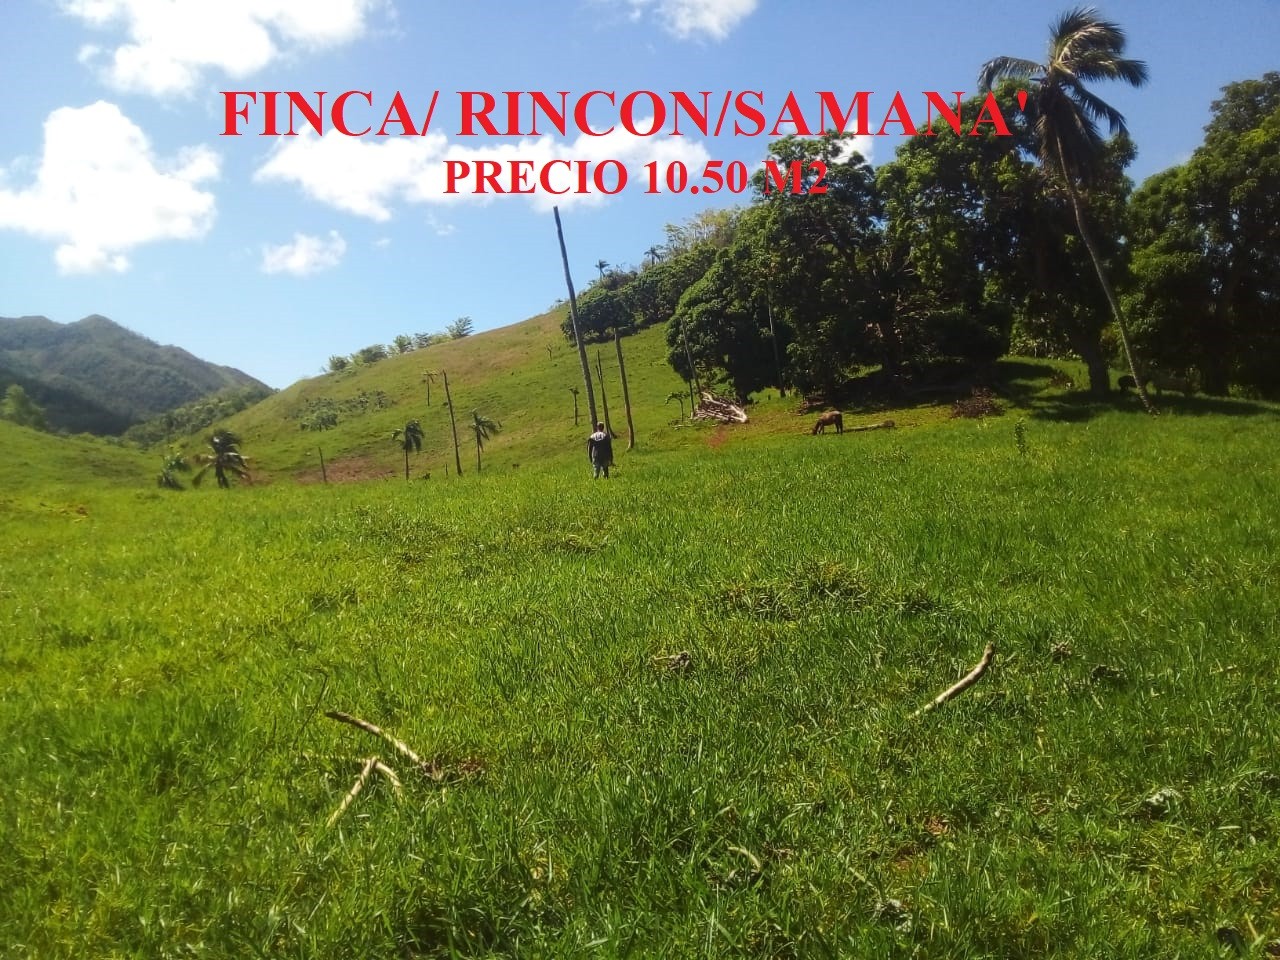 solares y terrenos - Finca de 140.000 m2 - 223 tareas en Rincon de Samana